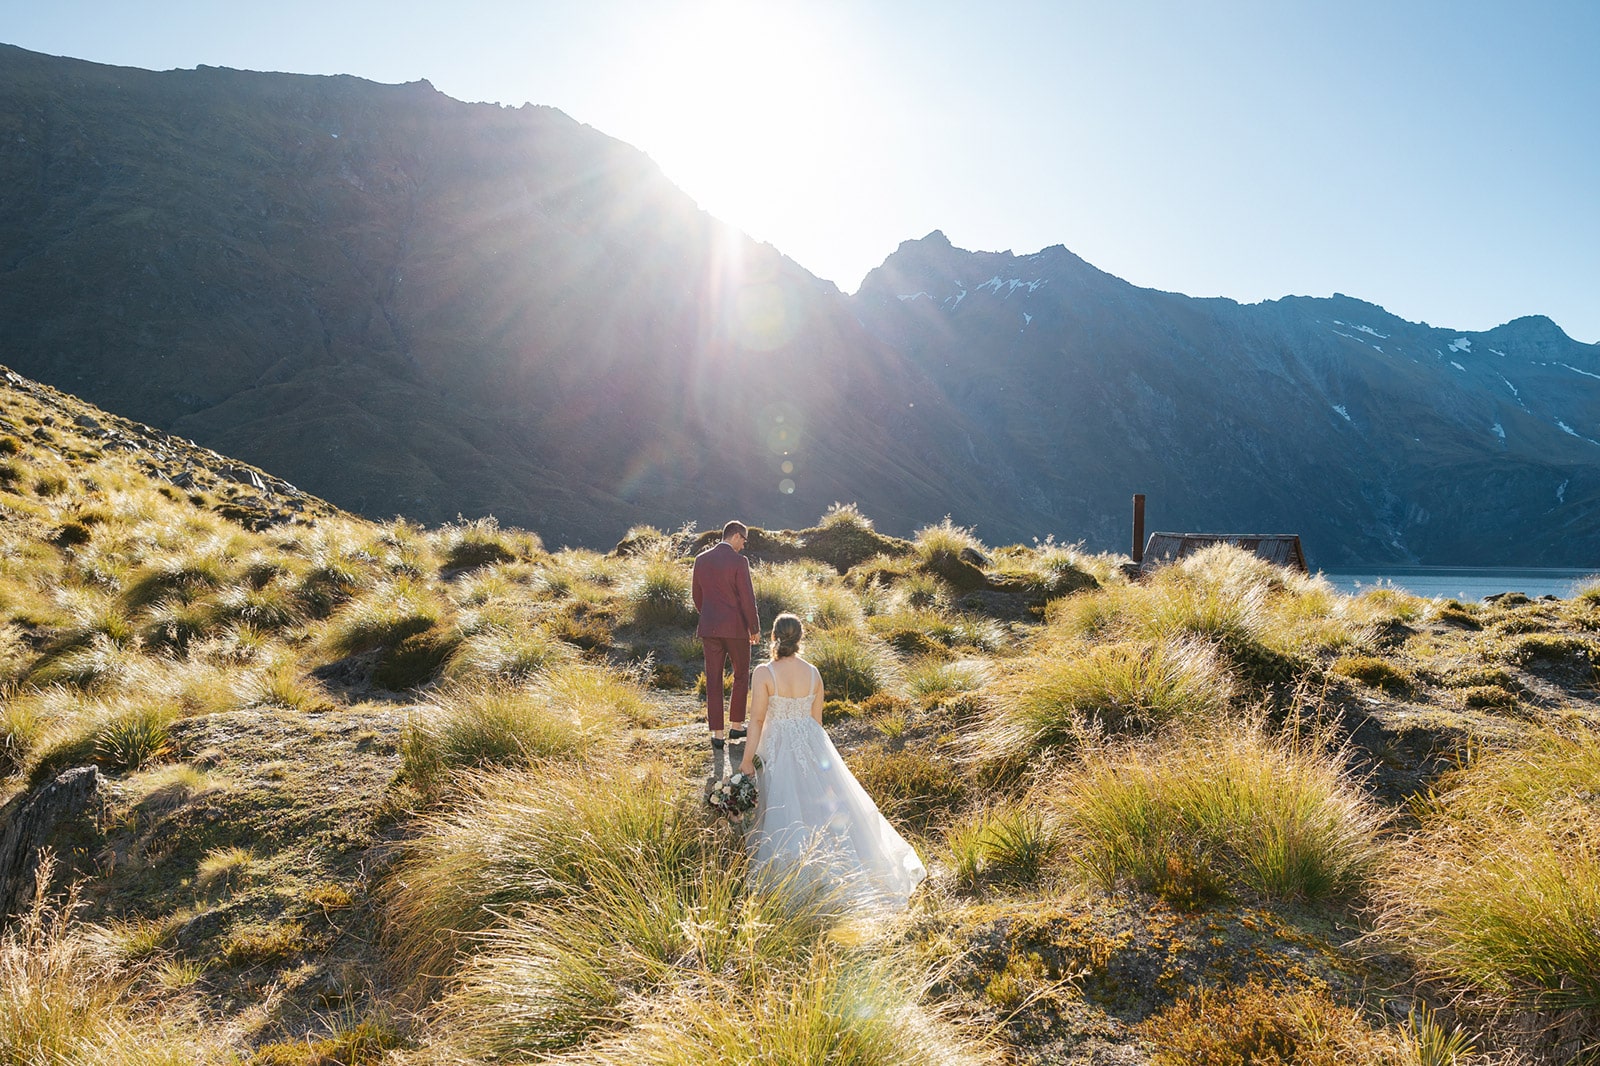 Heli Wedding at Lochnagar, Queenstown New Zealand